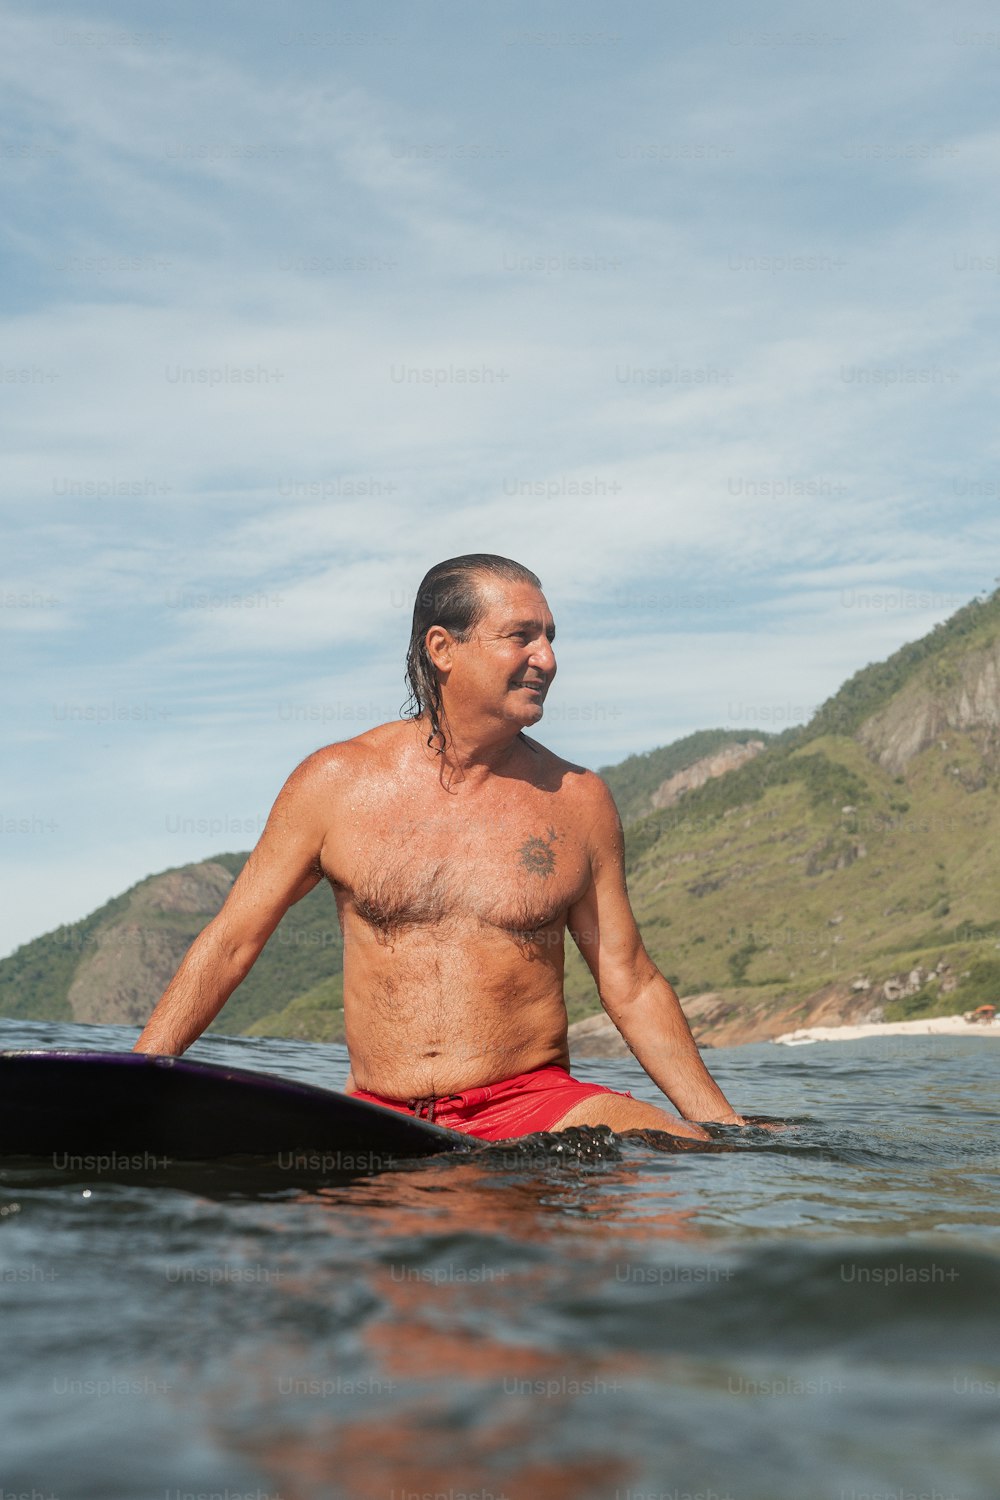 Un homme torse nu sur une planche de surf sur un plan d’eau